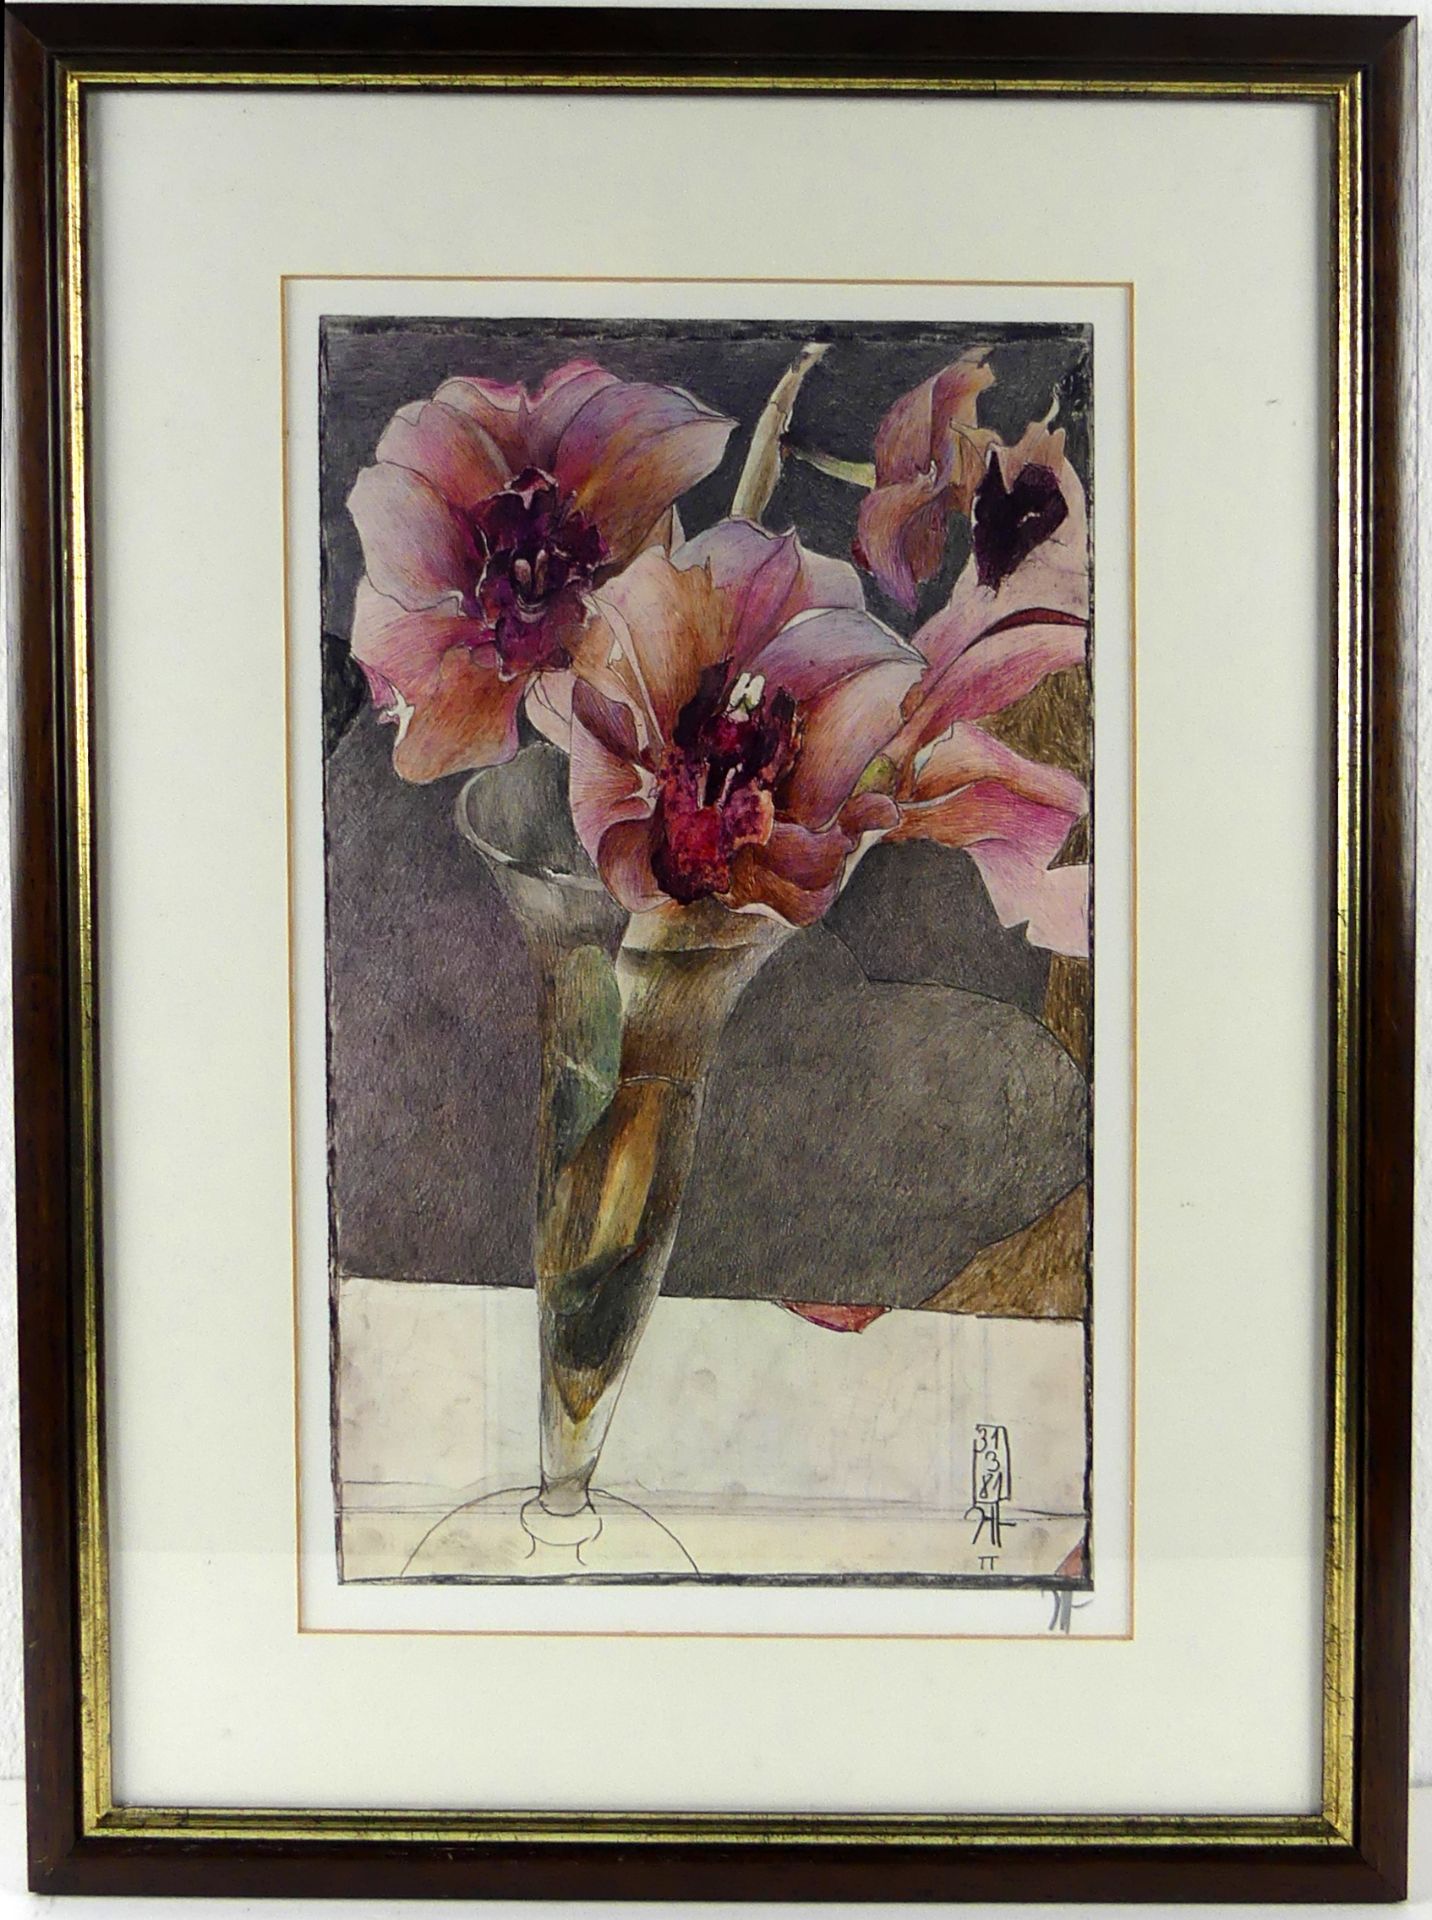 HORST JANSSEN (1929-1995), "Amaryllis Blüten", Farboffsetlithographie,